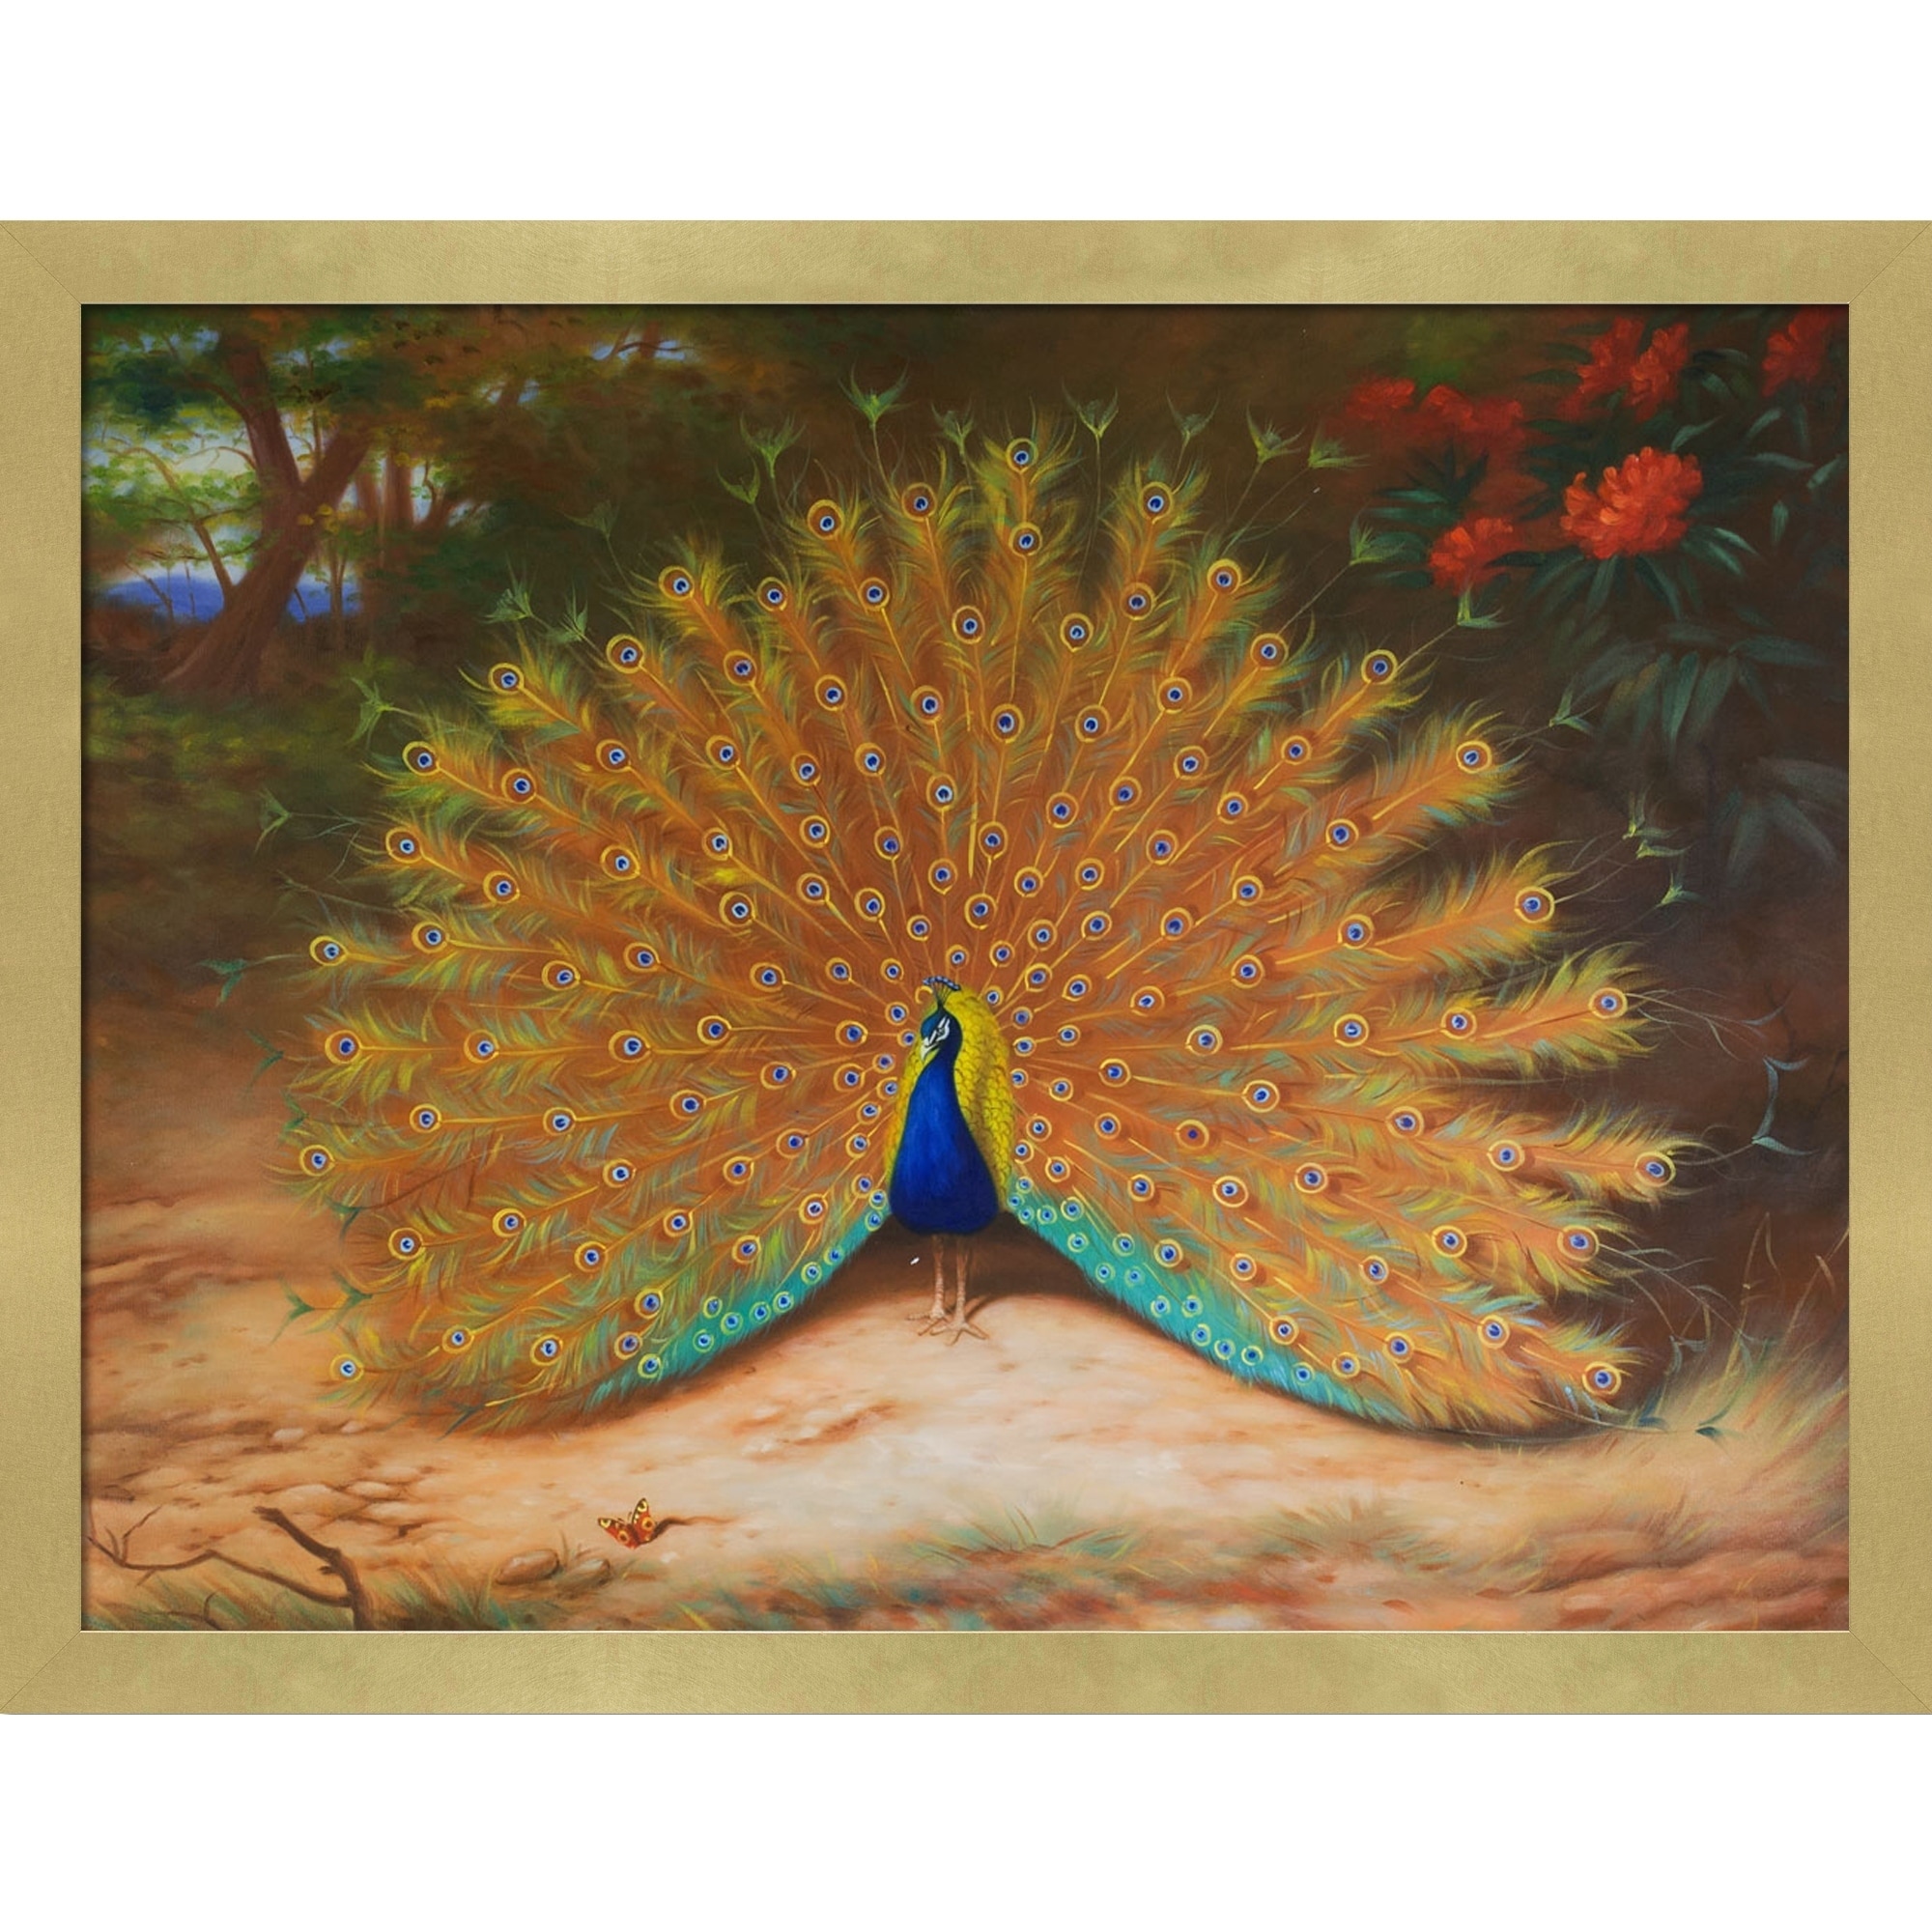 Meet Peter 'leaf print' peacock - Mudpies and Butterflies